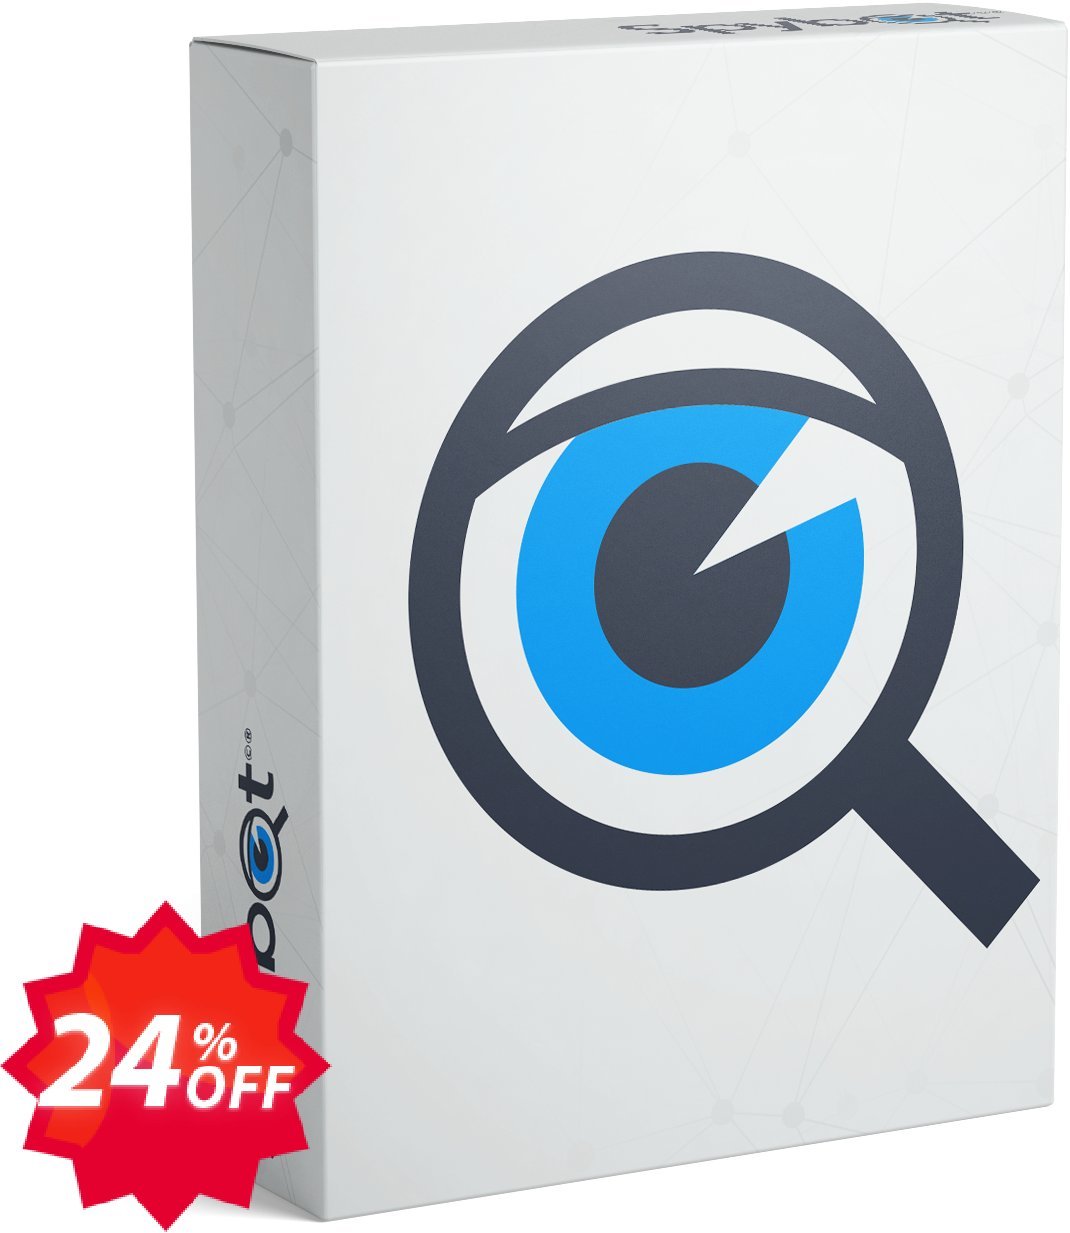 Spybot Anti-Beacon Plus Coupon code 24% discount 